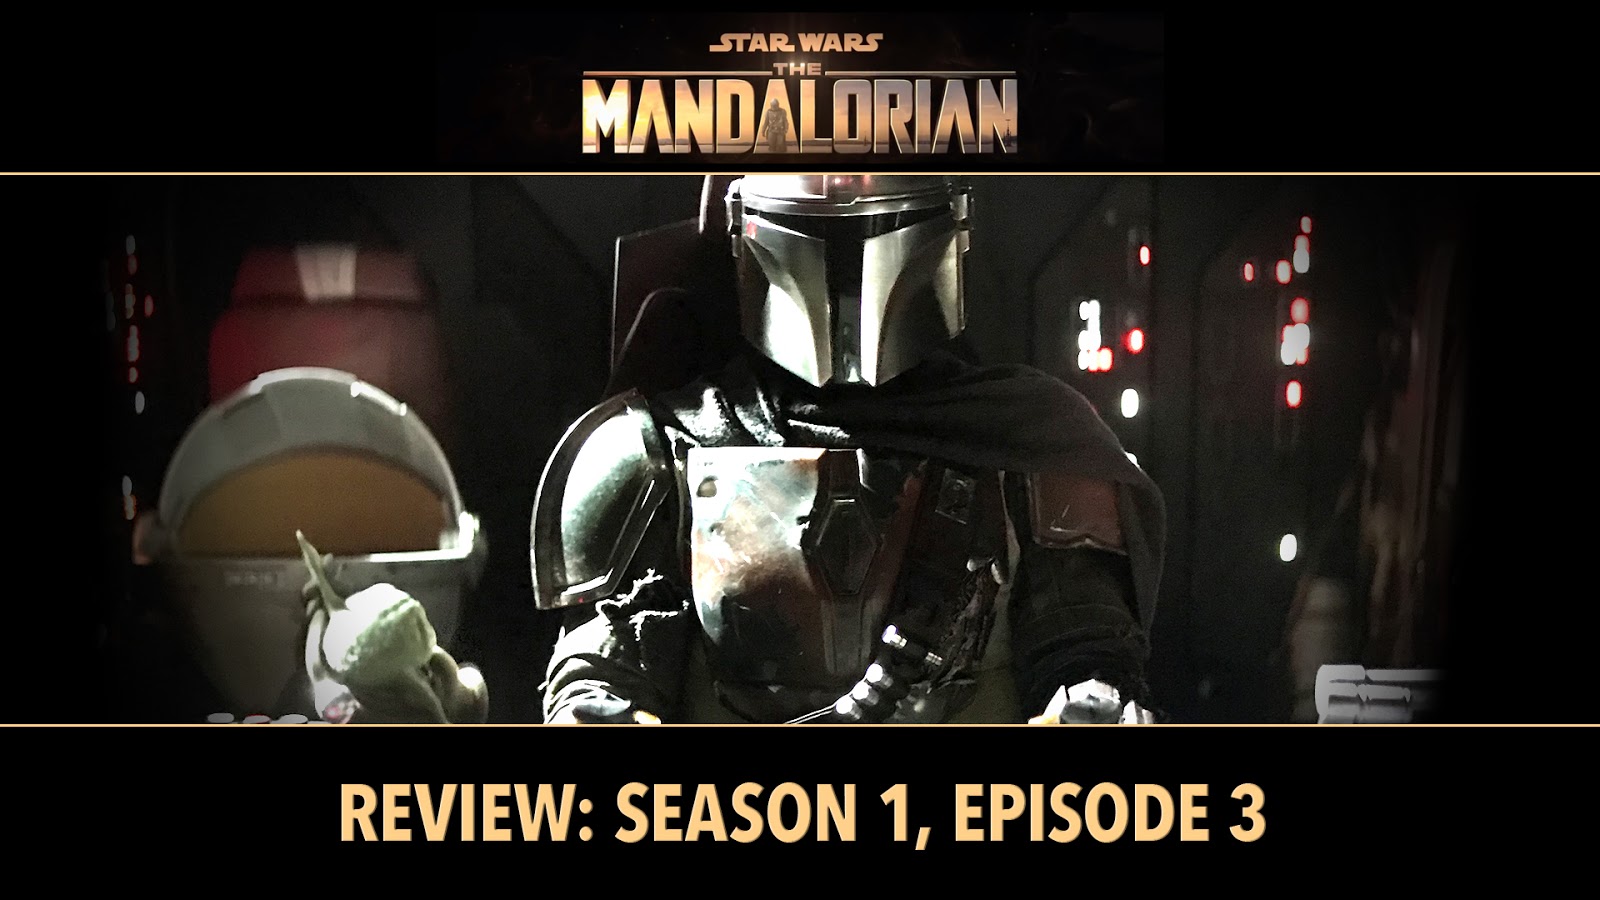 The Mandalorian season 3 episode 3 review - A fun diversion